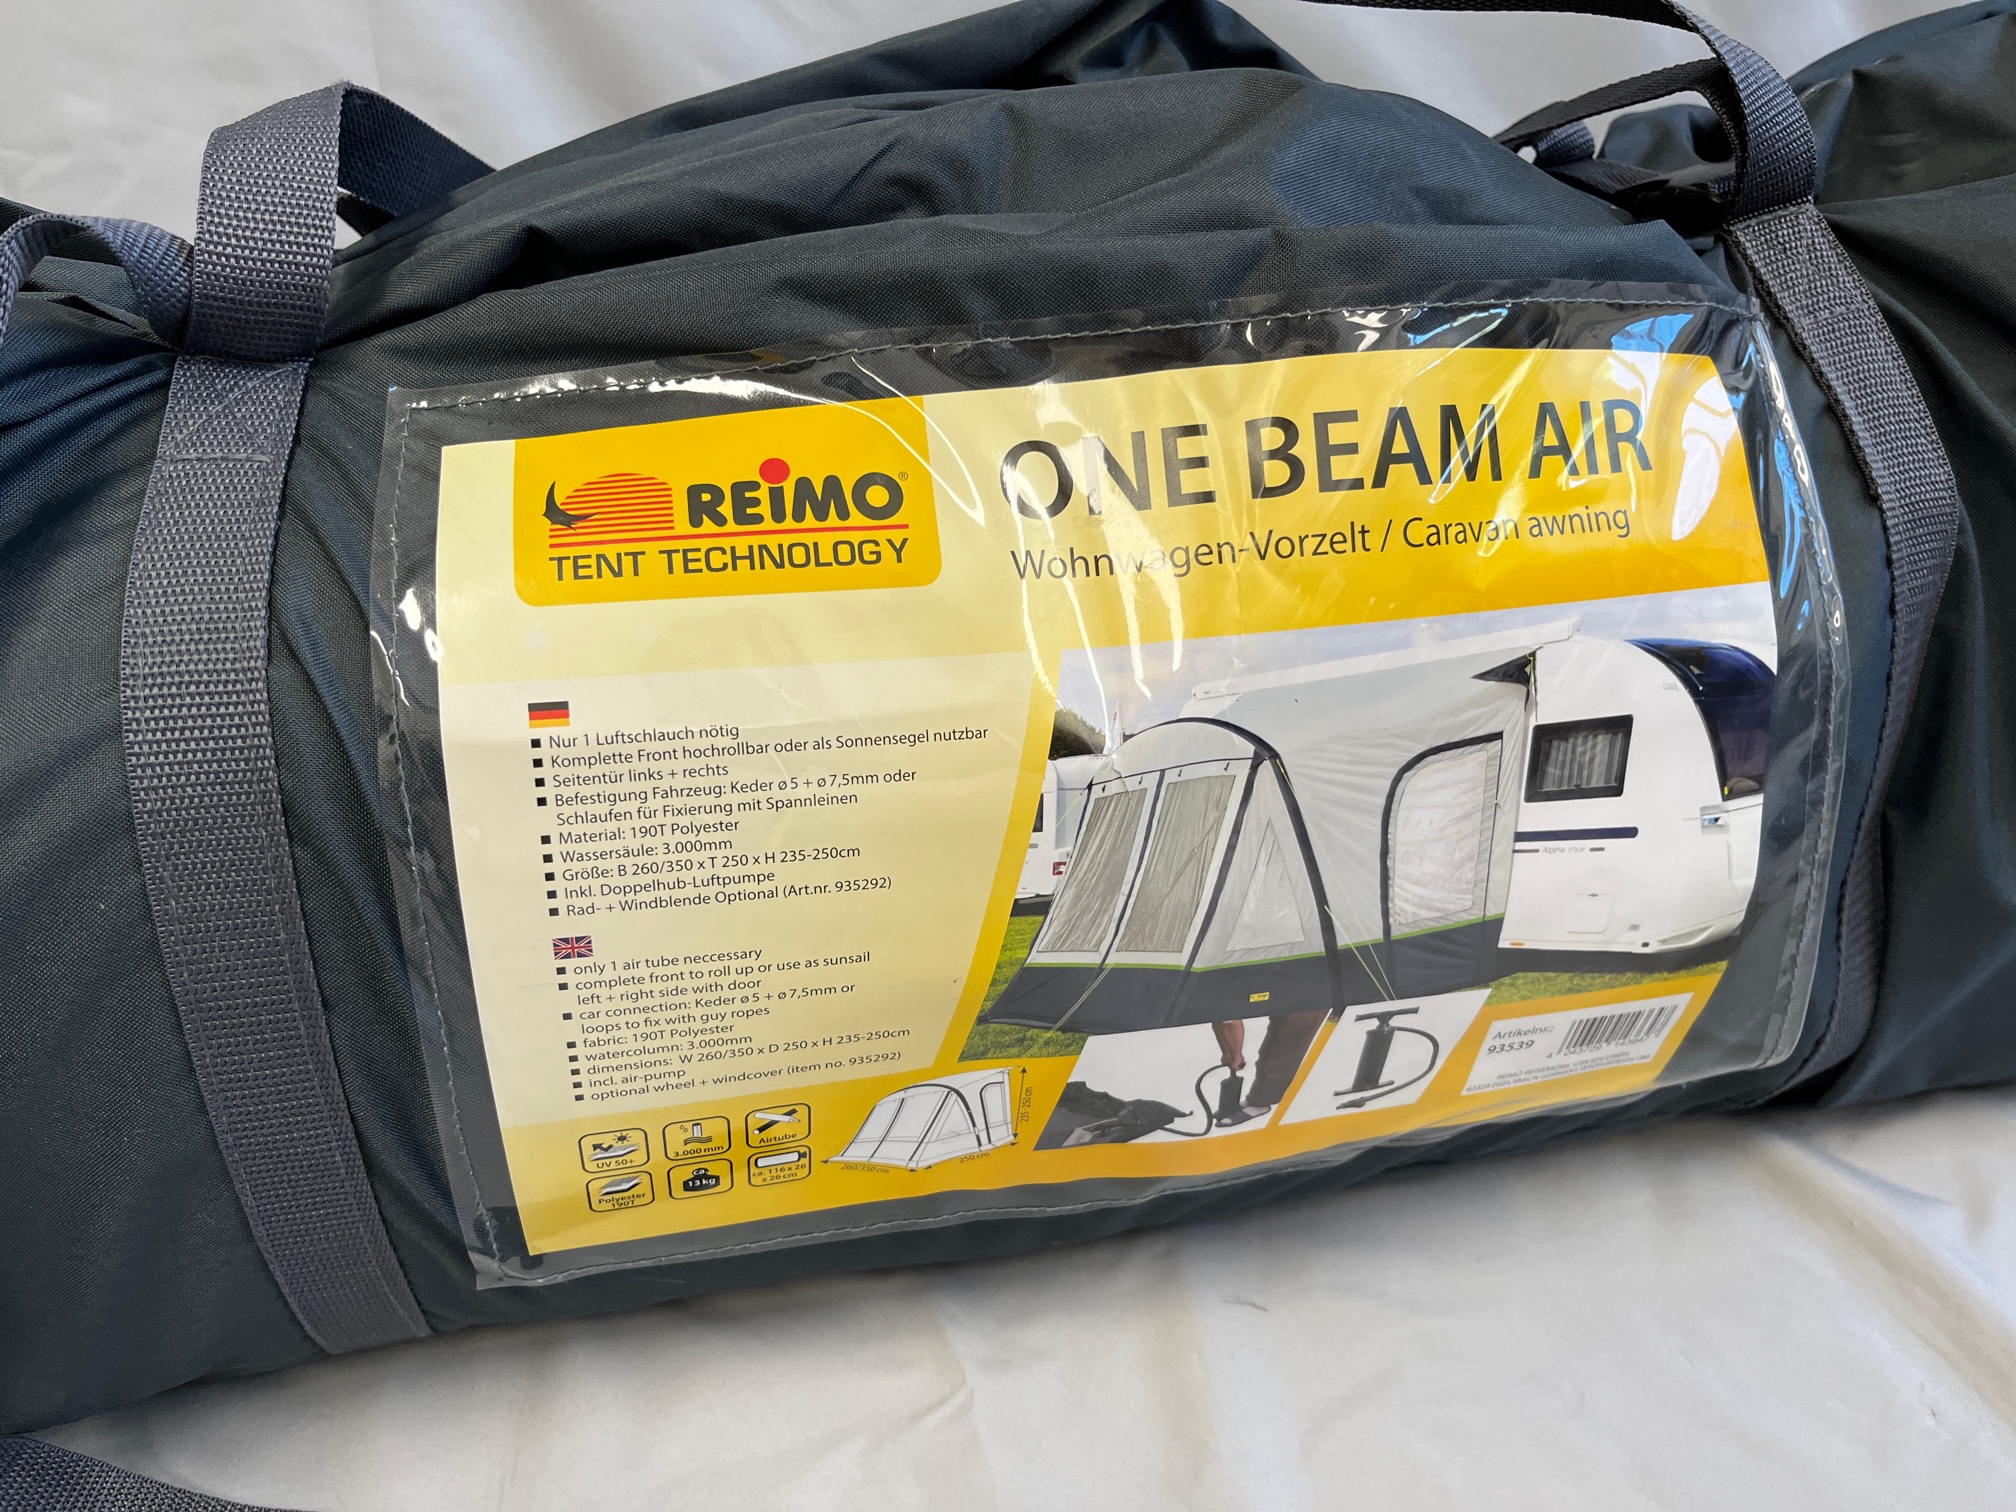 Reimo One Beam Air Wohnwagen Vorzelt 93539 – Ersatzteile für Wohnmobil